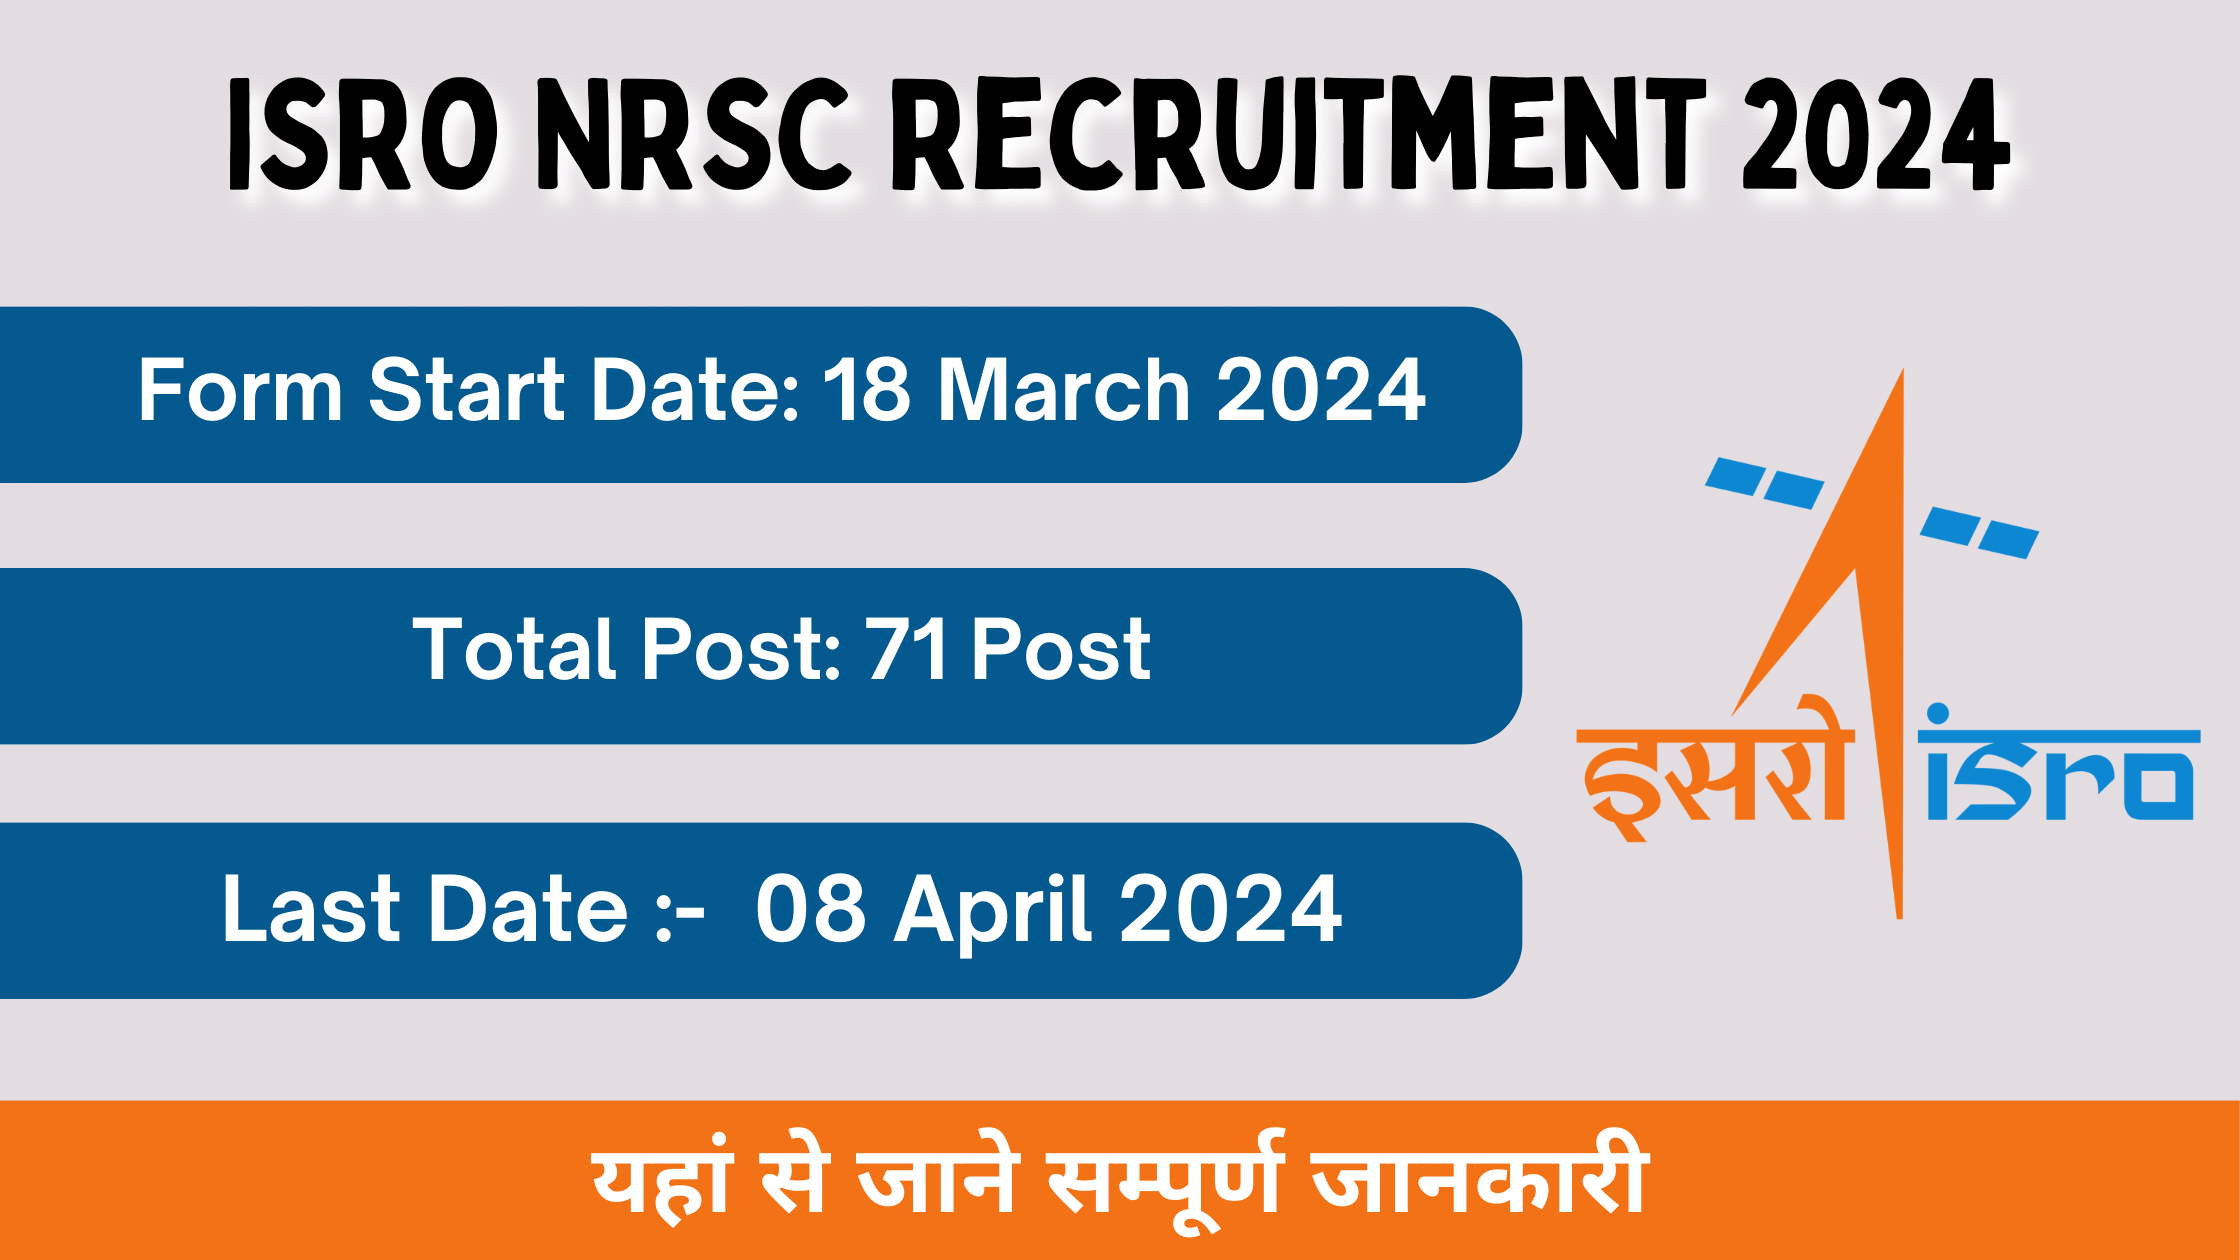 ISRO NRSC Recruitment 2024